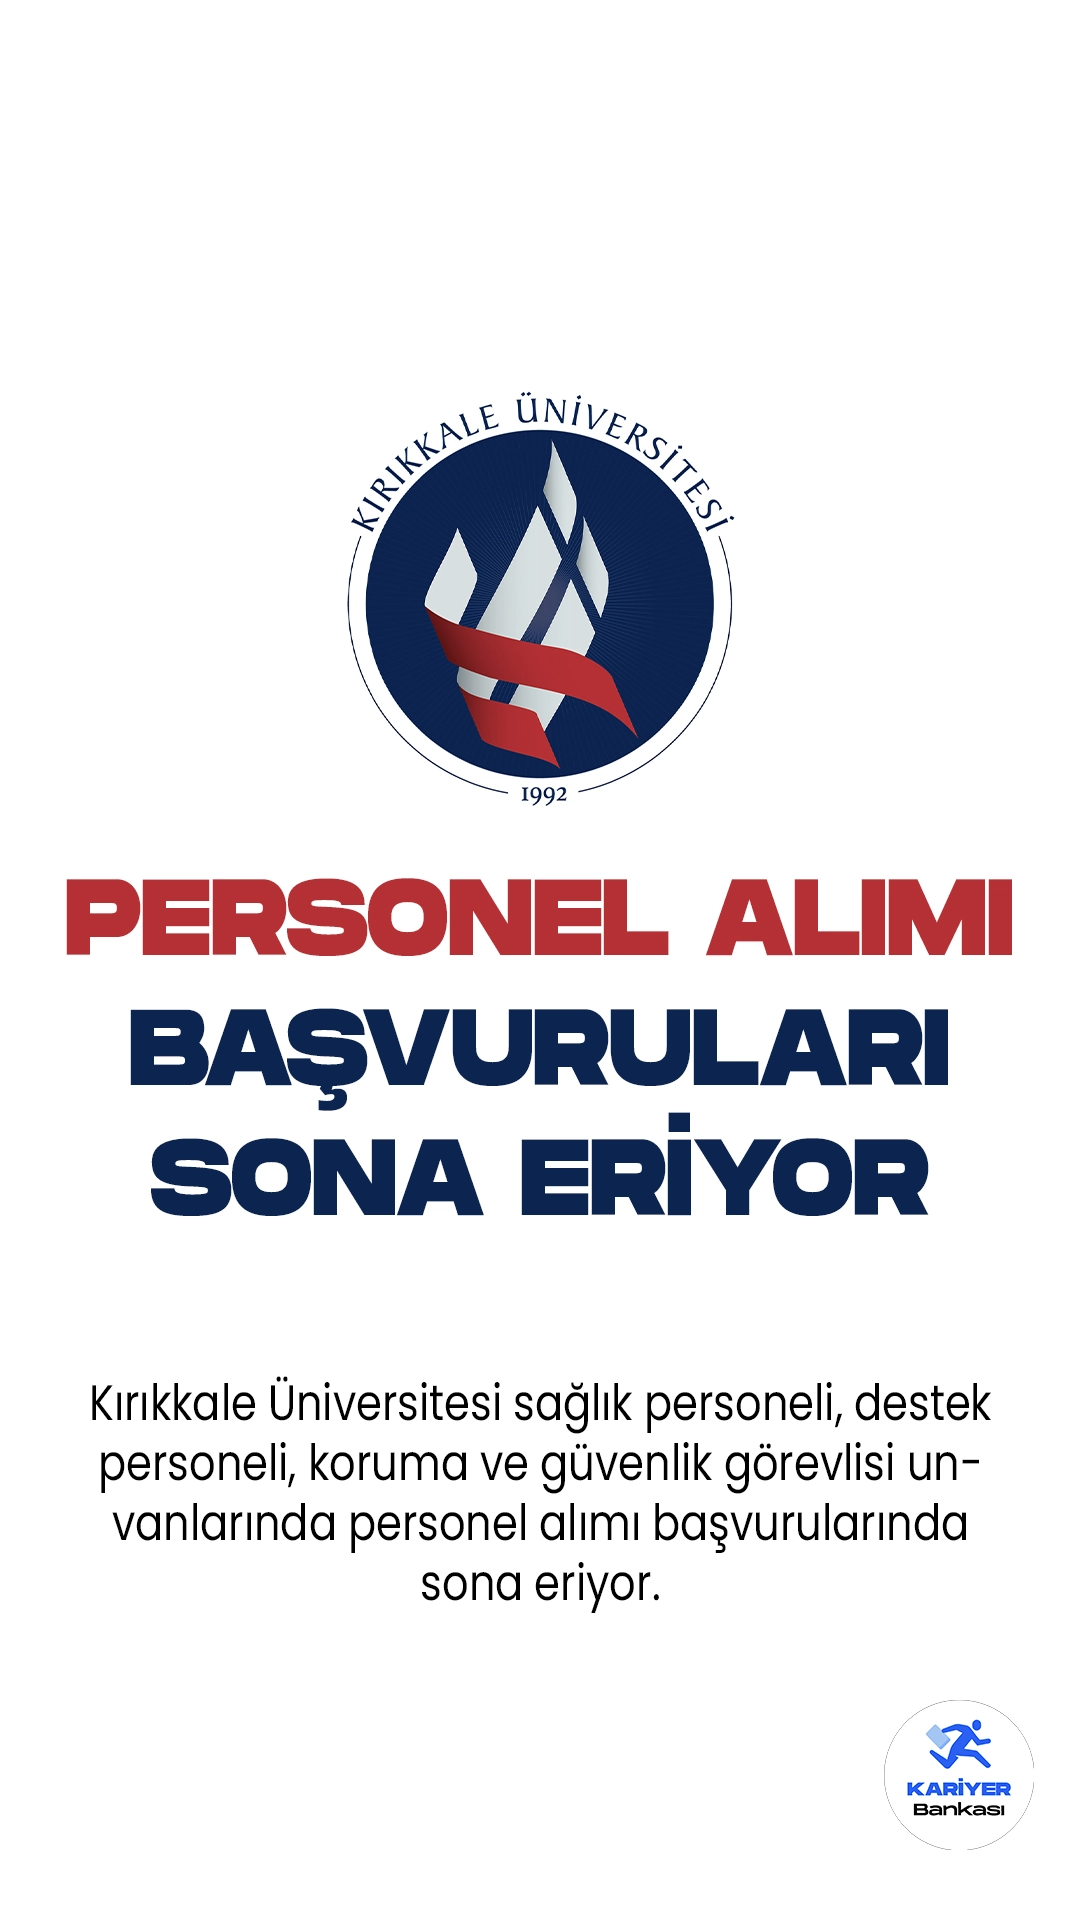 Kırıkkale Üniversitesi personel alımı başvurularında son saatlere girildi. İlgili alım duyurusu Resmi Gazete'de yayımlanmış, Üniversiteye 60 sözleşmeli personel alımı yapılacağı aktarılmıştır. Başvurular yarın(19 Haziran) sona eriyor. Başvuru yapacak adayların şartları dikkatle incelemesi gerekmektedir.